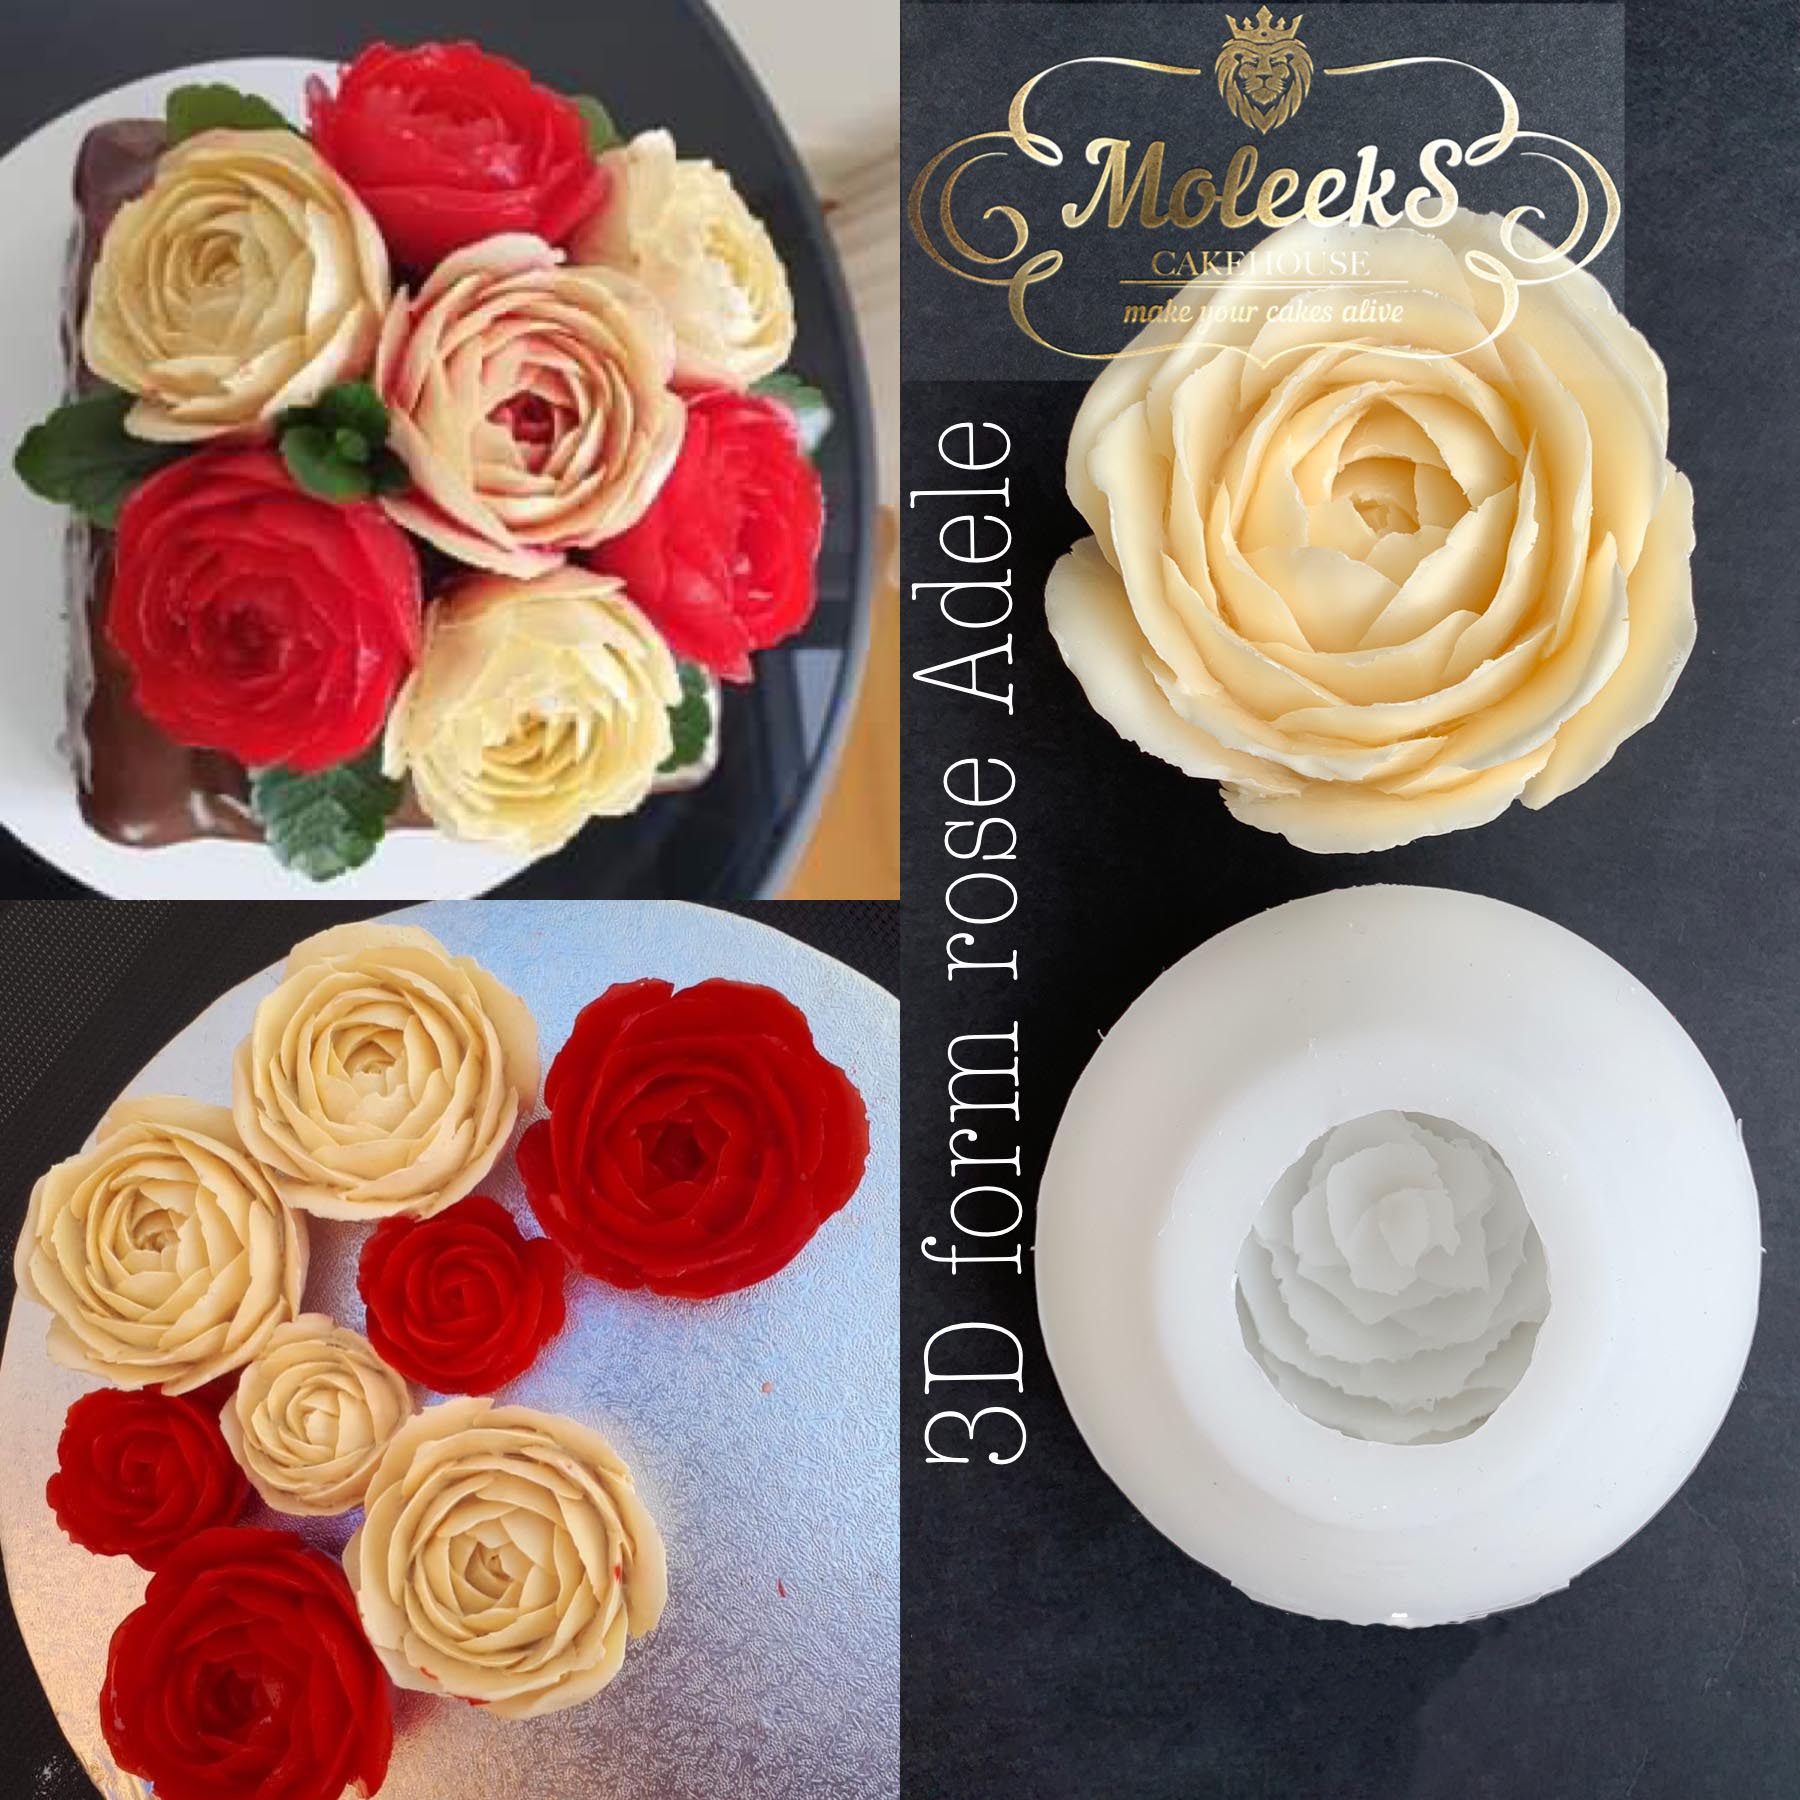 Set of 2 ADELLE ROSE Molds - 3D floral